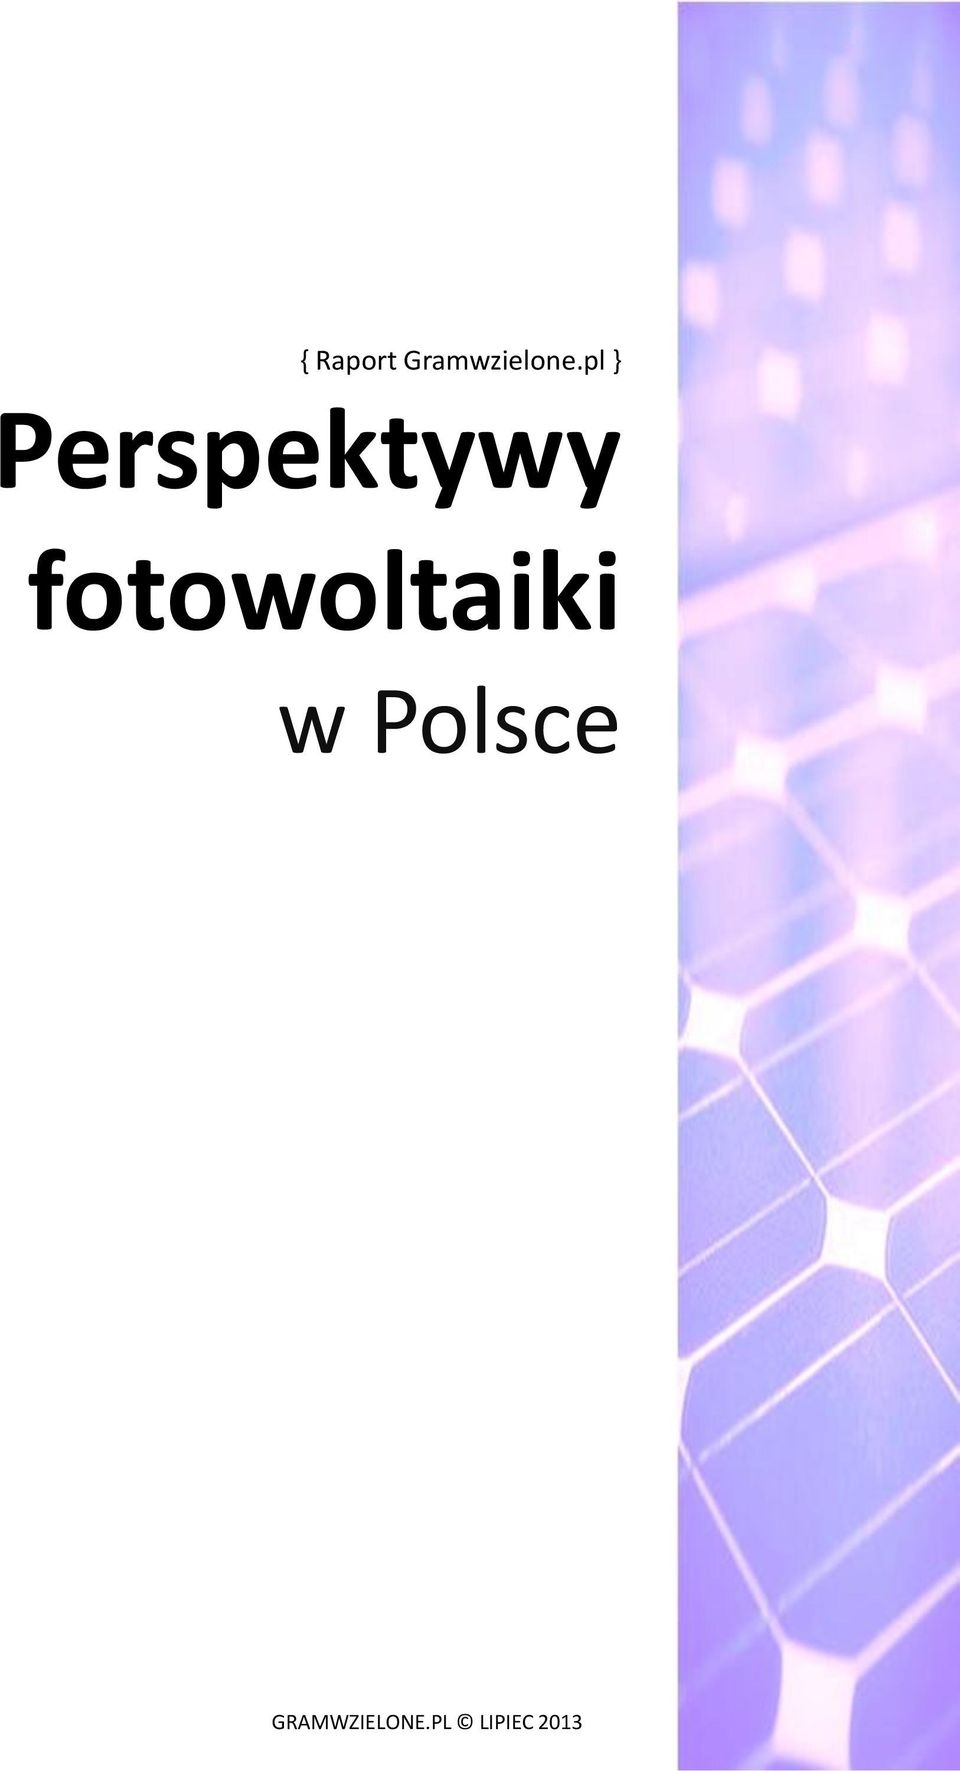 fotowoltaiki w Polsce